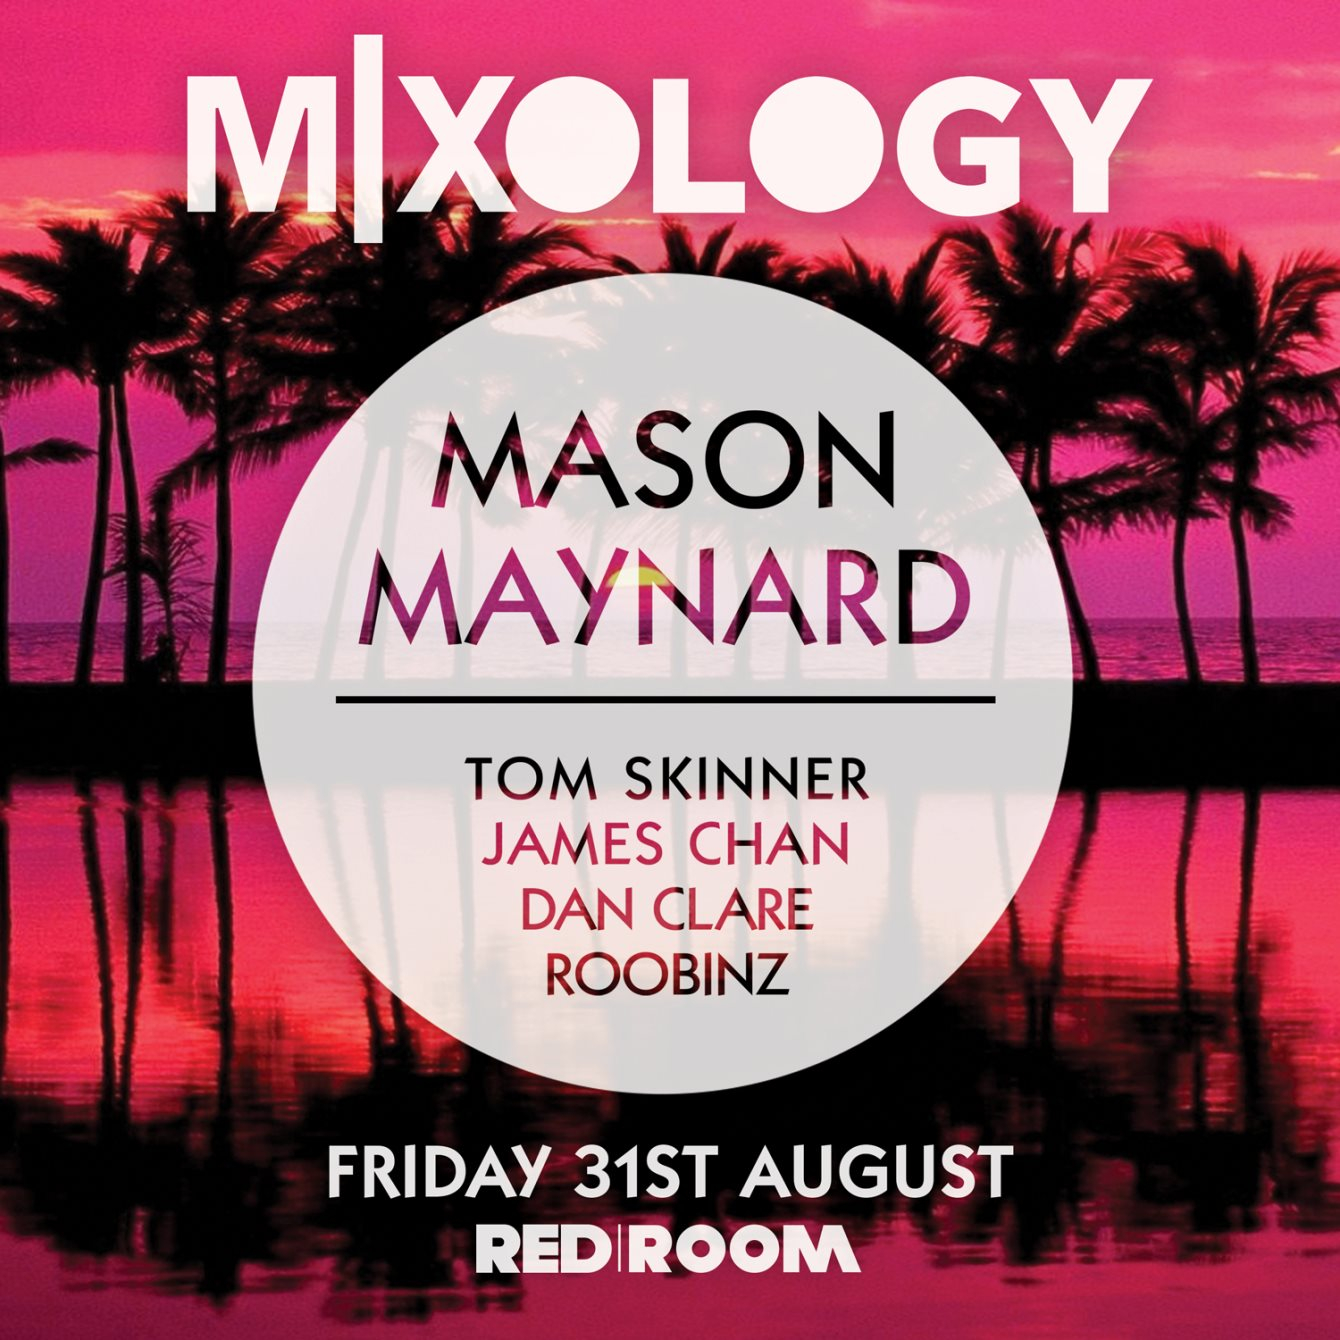 Mixology presents Mason Maynard - Flyer front